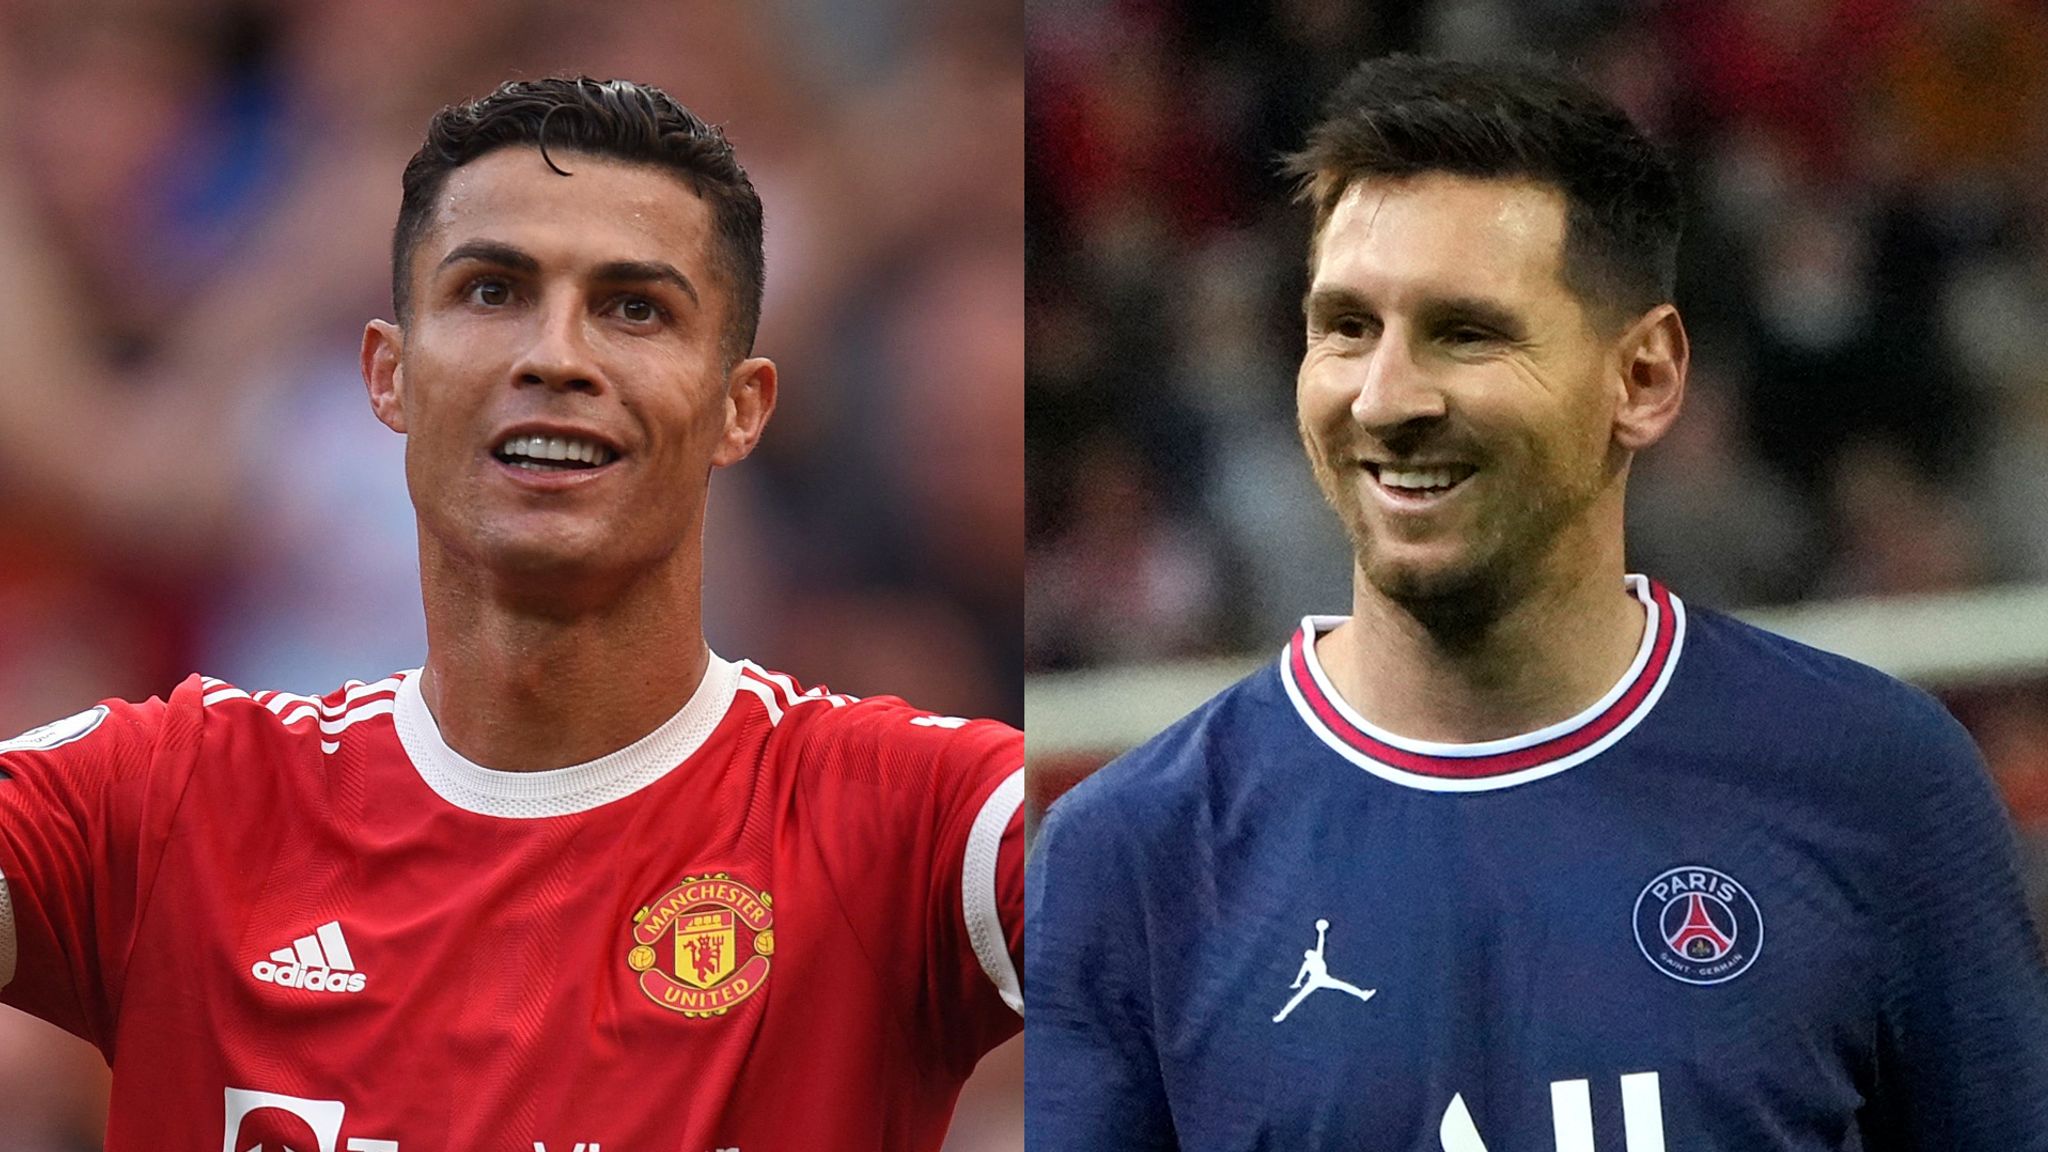 Lionel Messi Vs Cristiano Ronaldo: So Who Is The GOAT?